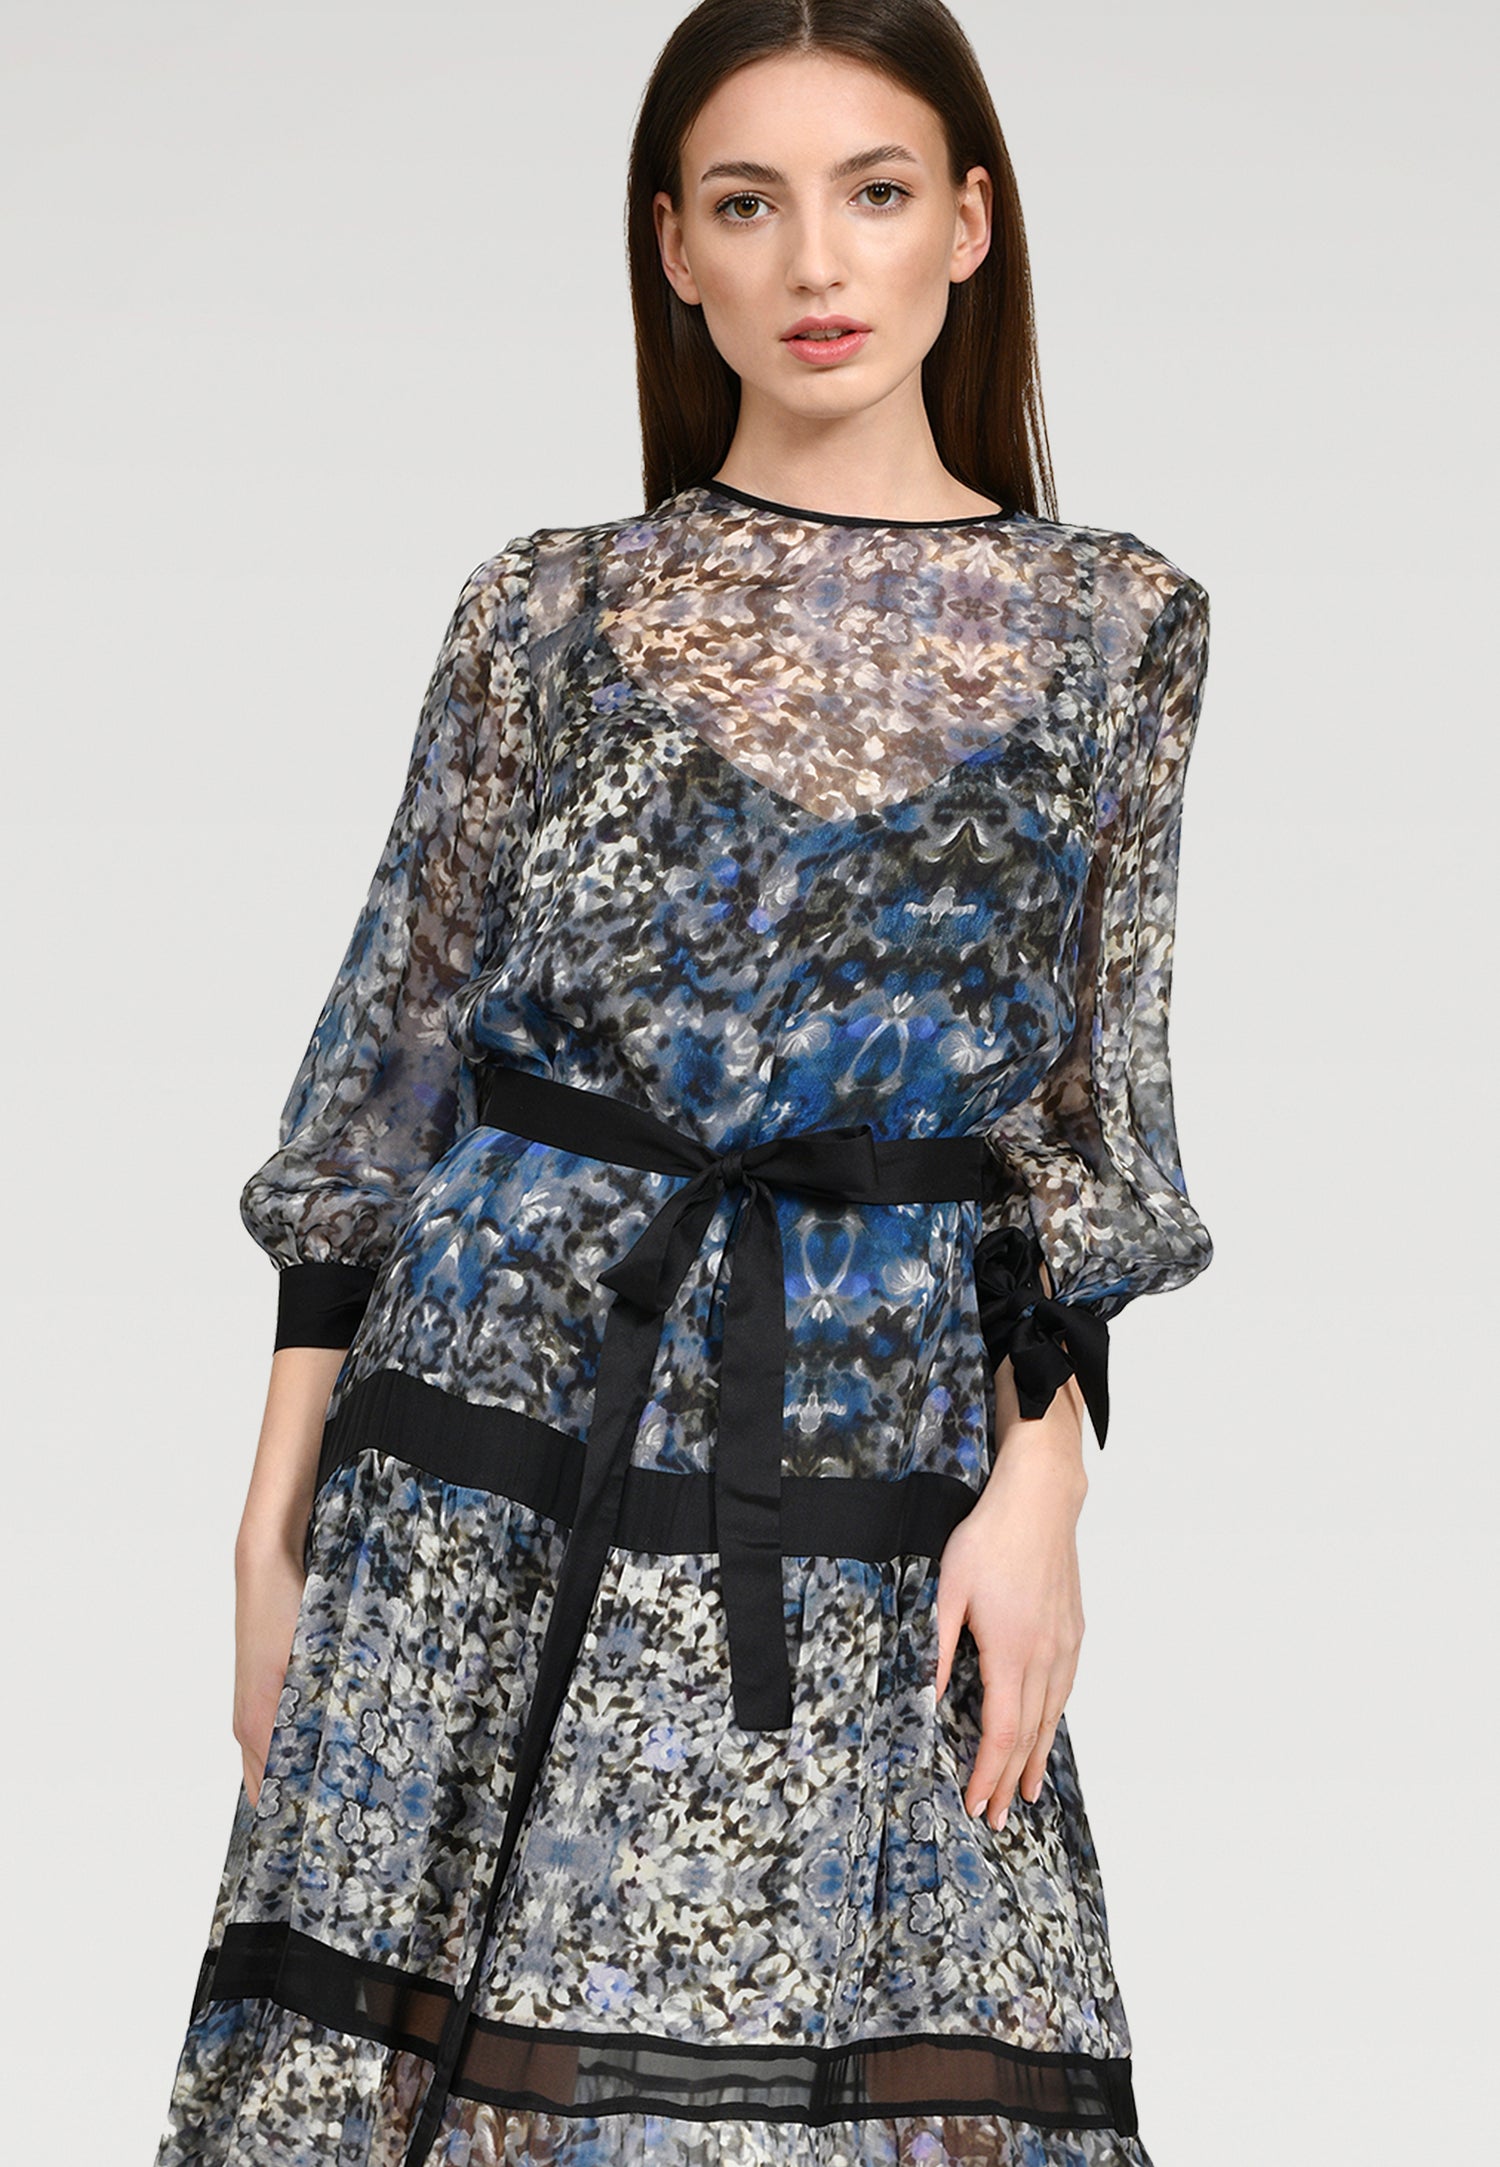 Maxi Kleid aus zarter Chiffonseide mit einen bezaubernden Blütenprint, Schleifen an den Ärmeln und abnehmbaren Volants